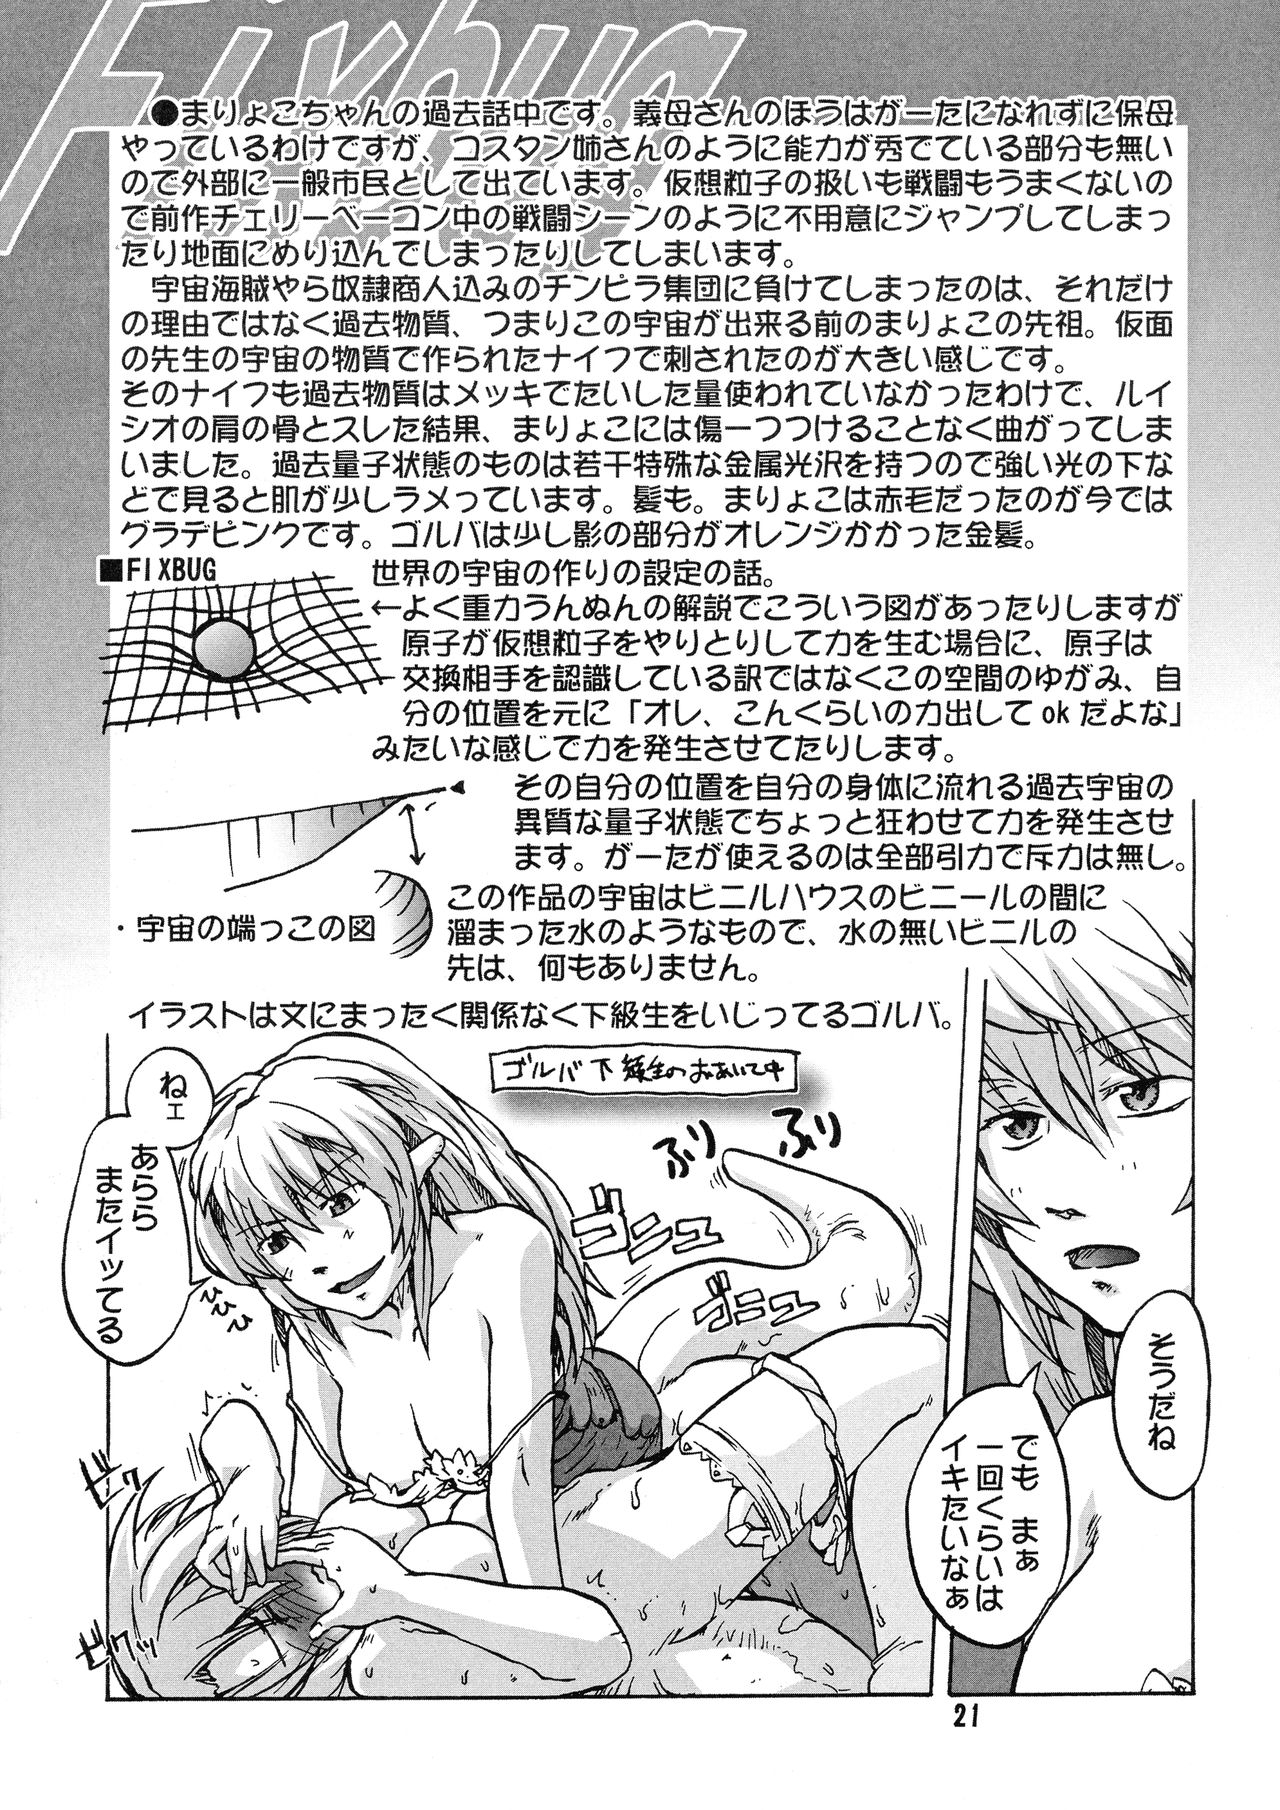 [Kyodai Kidou Yousai Kyoushuu (Kamio 96)] Manga Mintochikuwa vol. 3 20